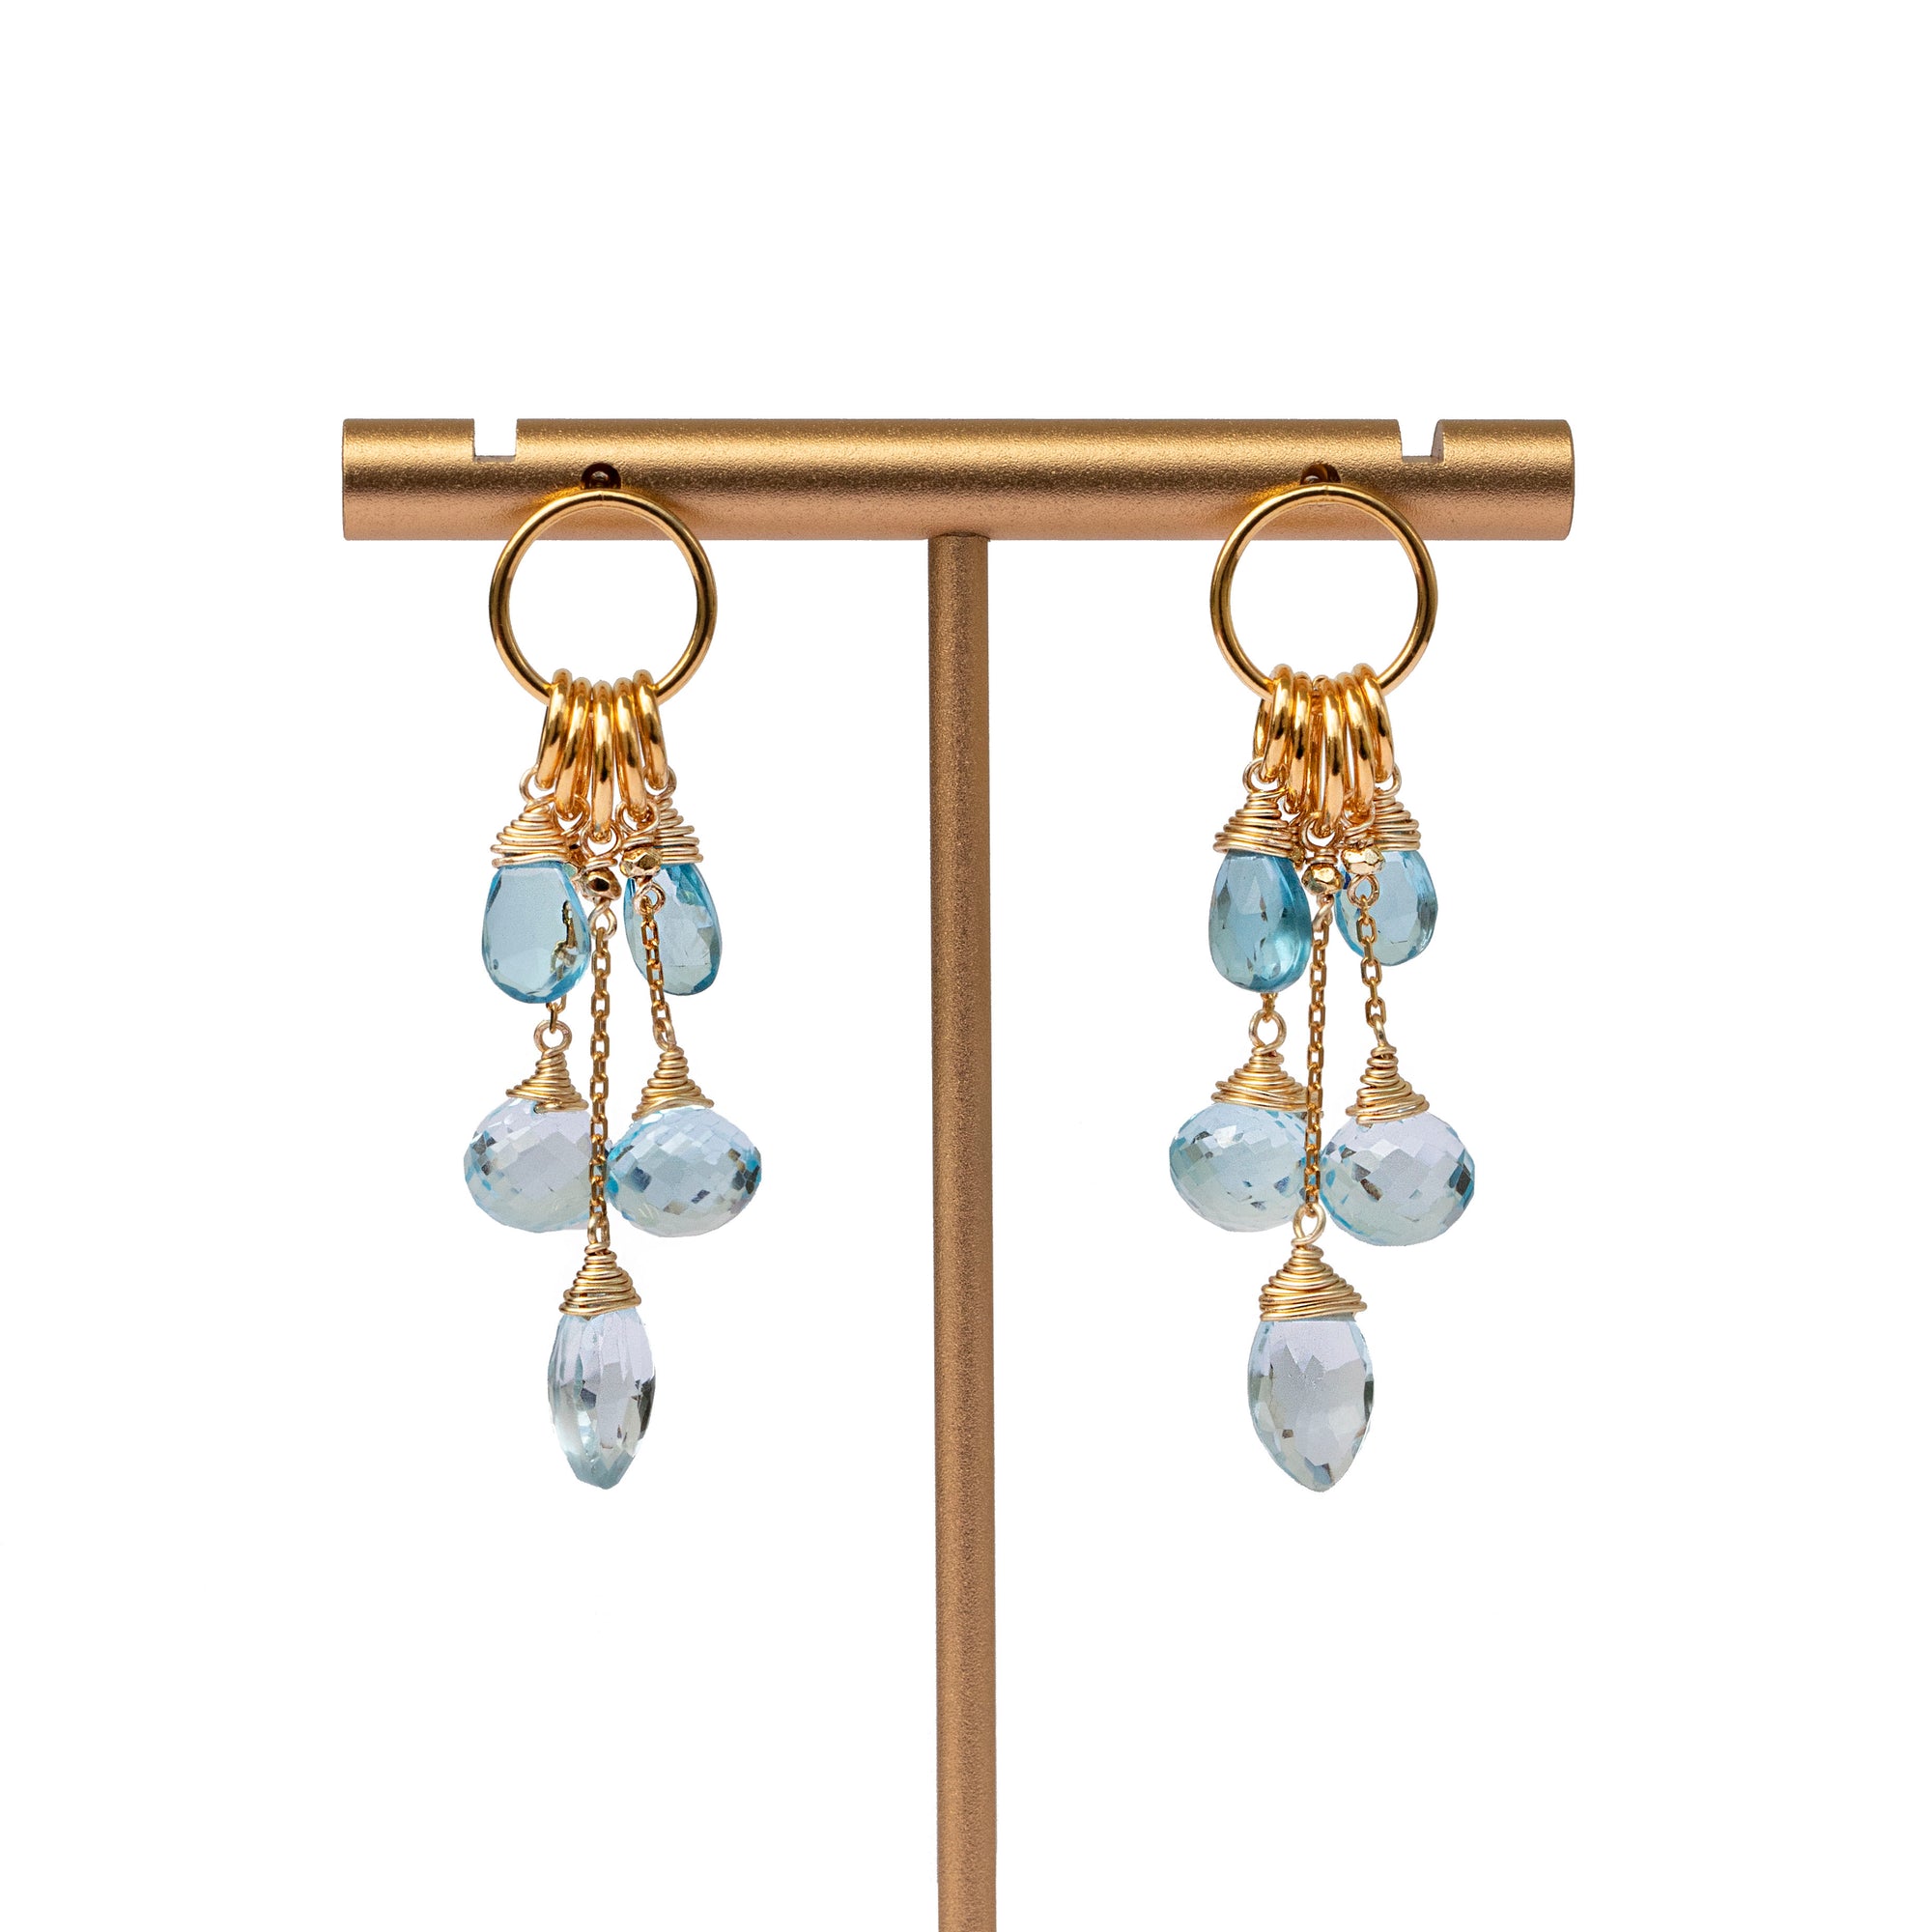 24K Gold Vermeil & Swiss Blue Topaz Charm Earrings